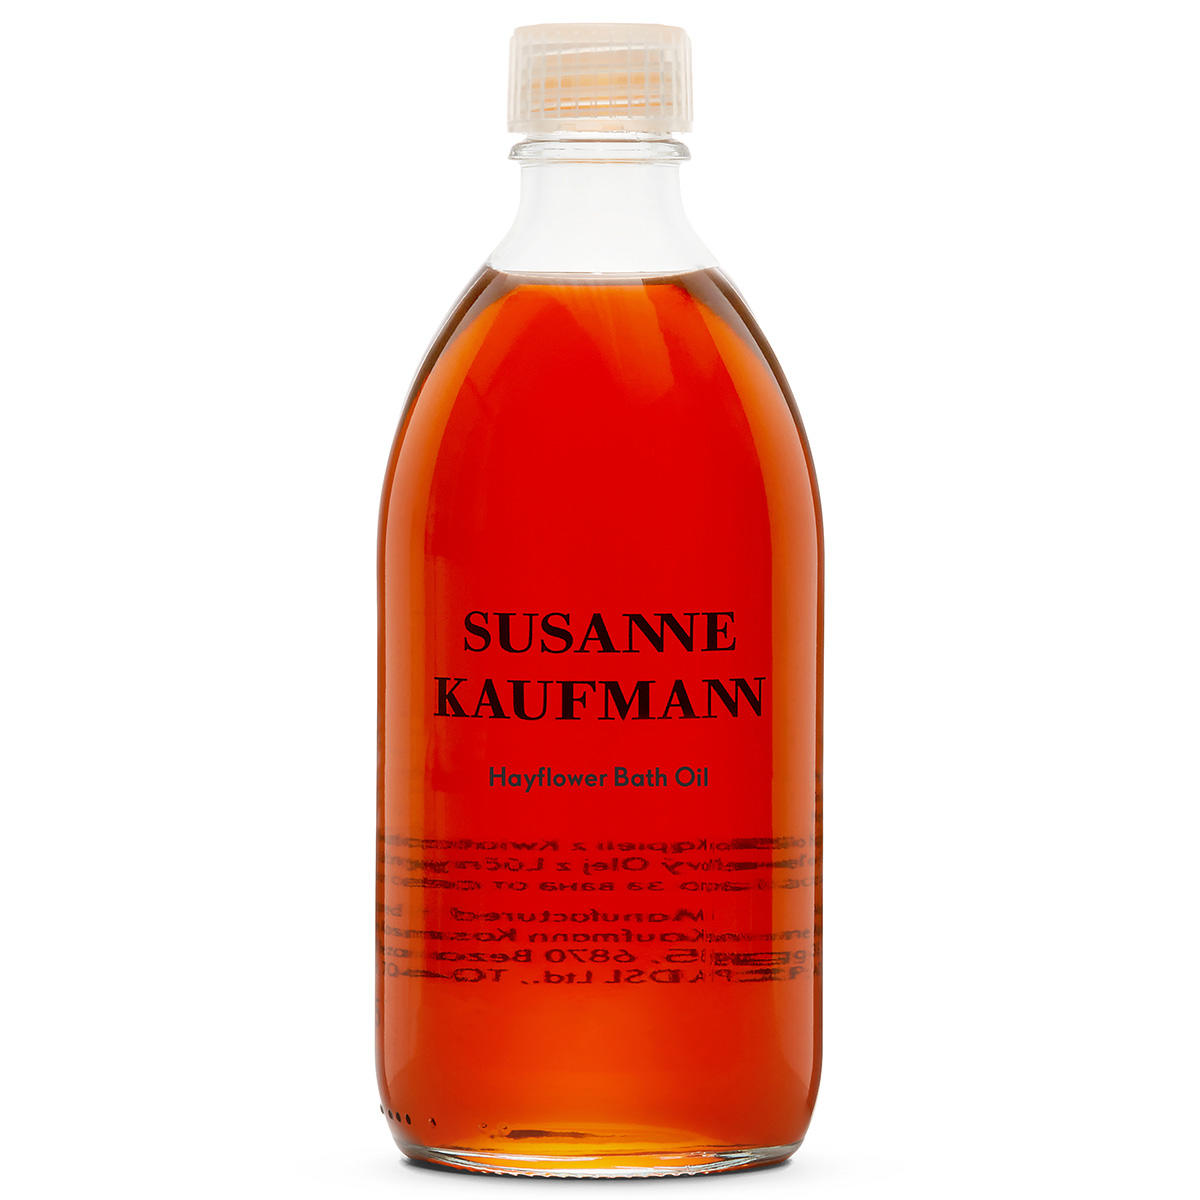 Susanne Kaufmann Bain d'Huile à la Fleur de Foin 250 ml - 1